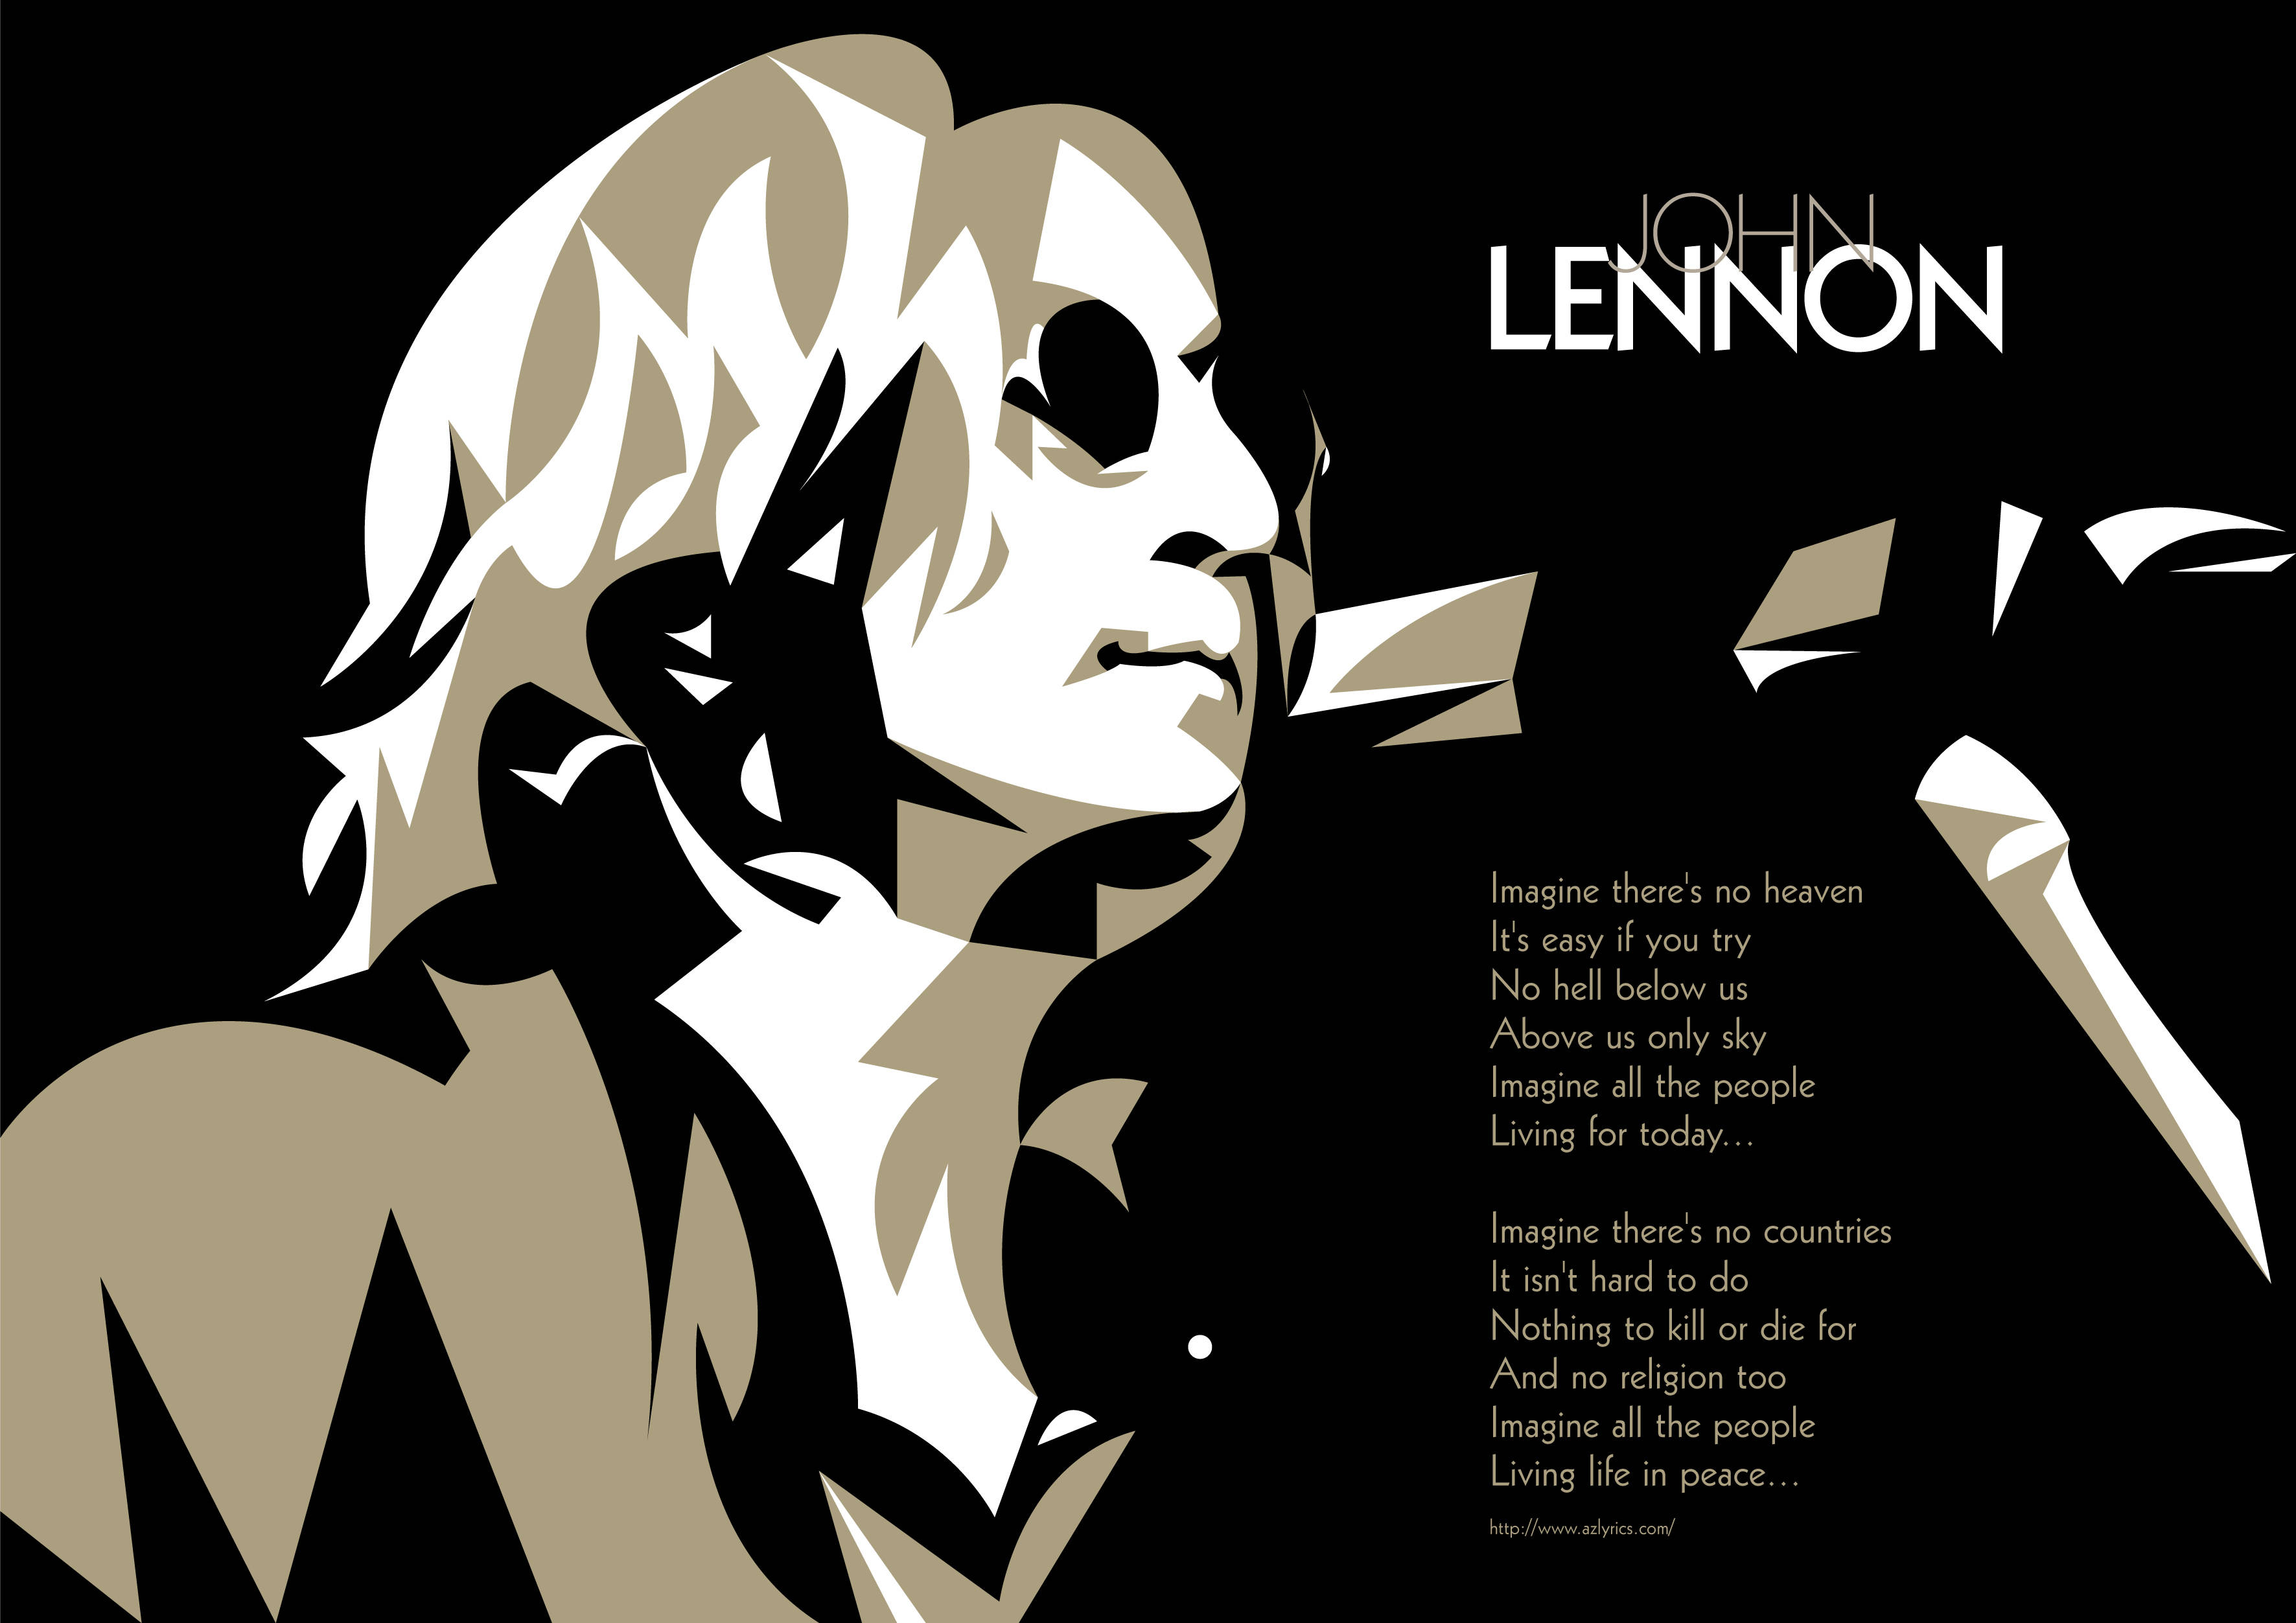 Imagine песня джона леннона. Imagine Lennon. John Lennon - imagine. John Lennon imagine обложка. Imagine альбом Джона Леннона обложка.